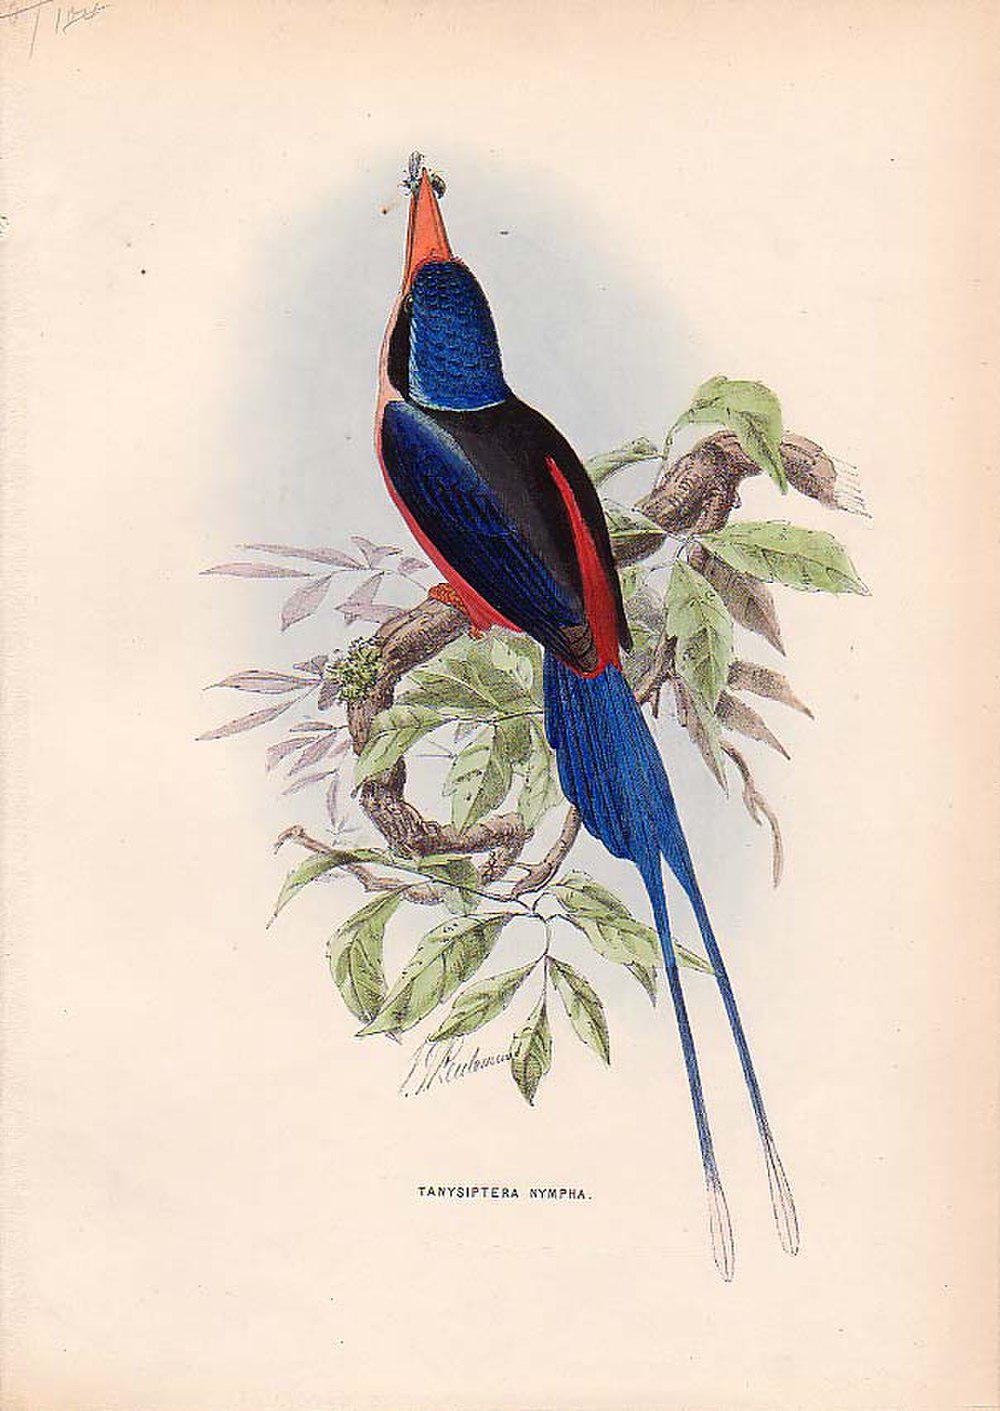 粉胸仙翡翠 / Red-breasted Paradise Kingfisher / Tanysiptera nympha